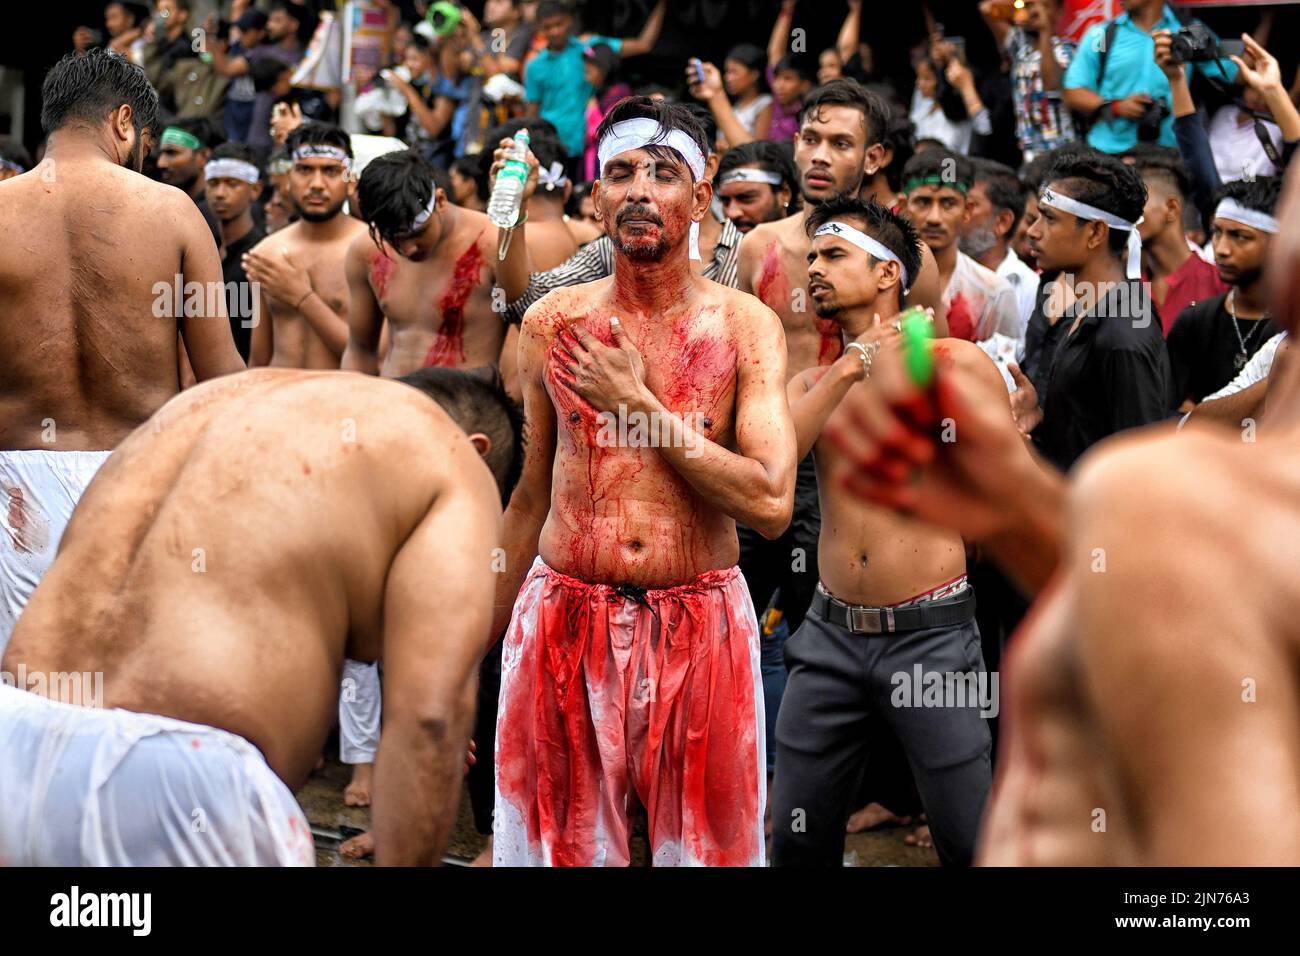 (NOTE AUX ÉDITEURS : l'image contient du contenu graphique.) Les musulmans chiites couverts de sang battent leurs coffres et leurs têtes avec des lames pendant la procession muharram de Kolkata. Muharram est le premier mois du calendrier islamique et Ashura est le dixième jour du mois de Muharram sur lequel se fait la commémoration du martyre de l'Imam Hussain, petit-fils du prophète Mahomet (PBUH), pendant la bataille de Karbala. C'est une partie de deuil pour les musulmans chiites et un jour de jeûne pour les musulmans sunnites qui est observé partout dans le monde. Banque D'Images